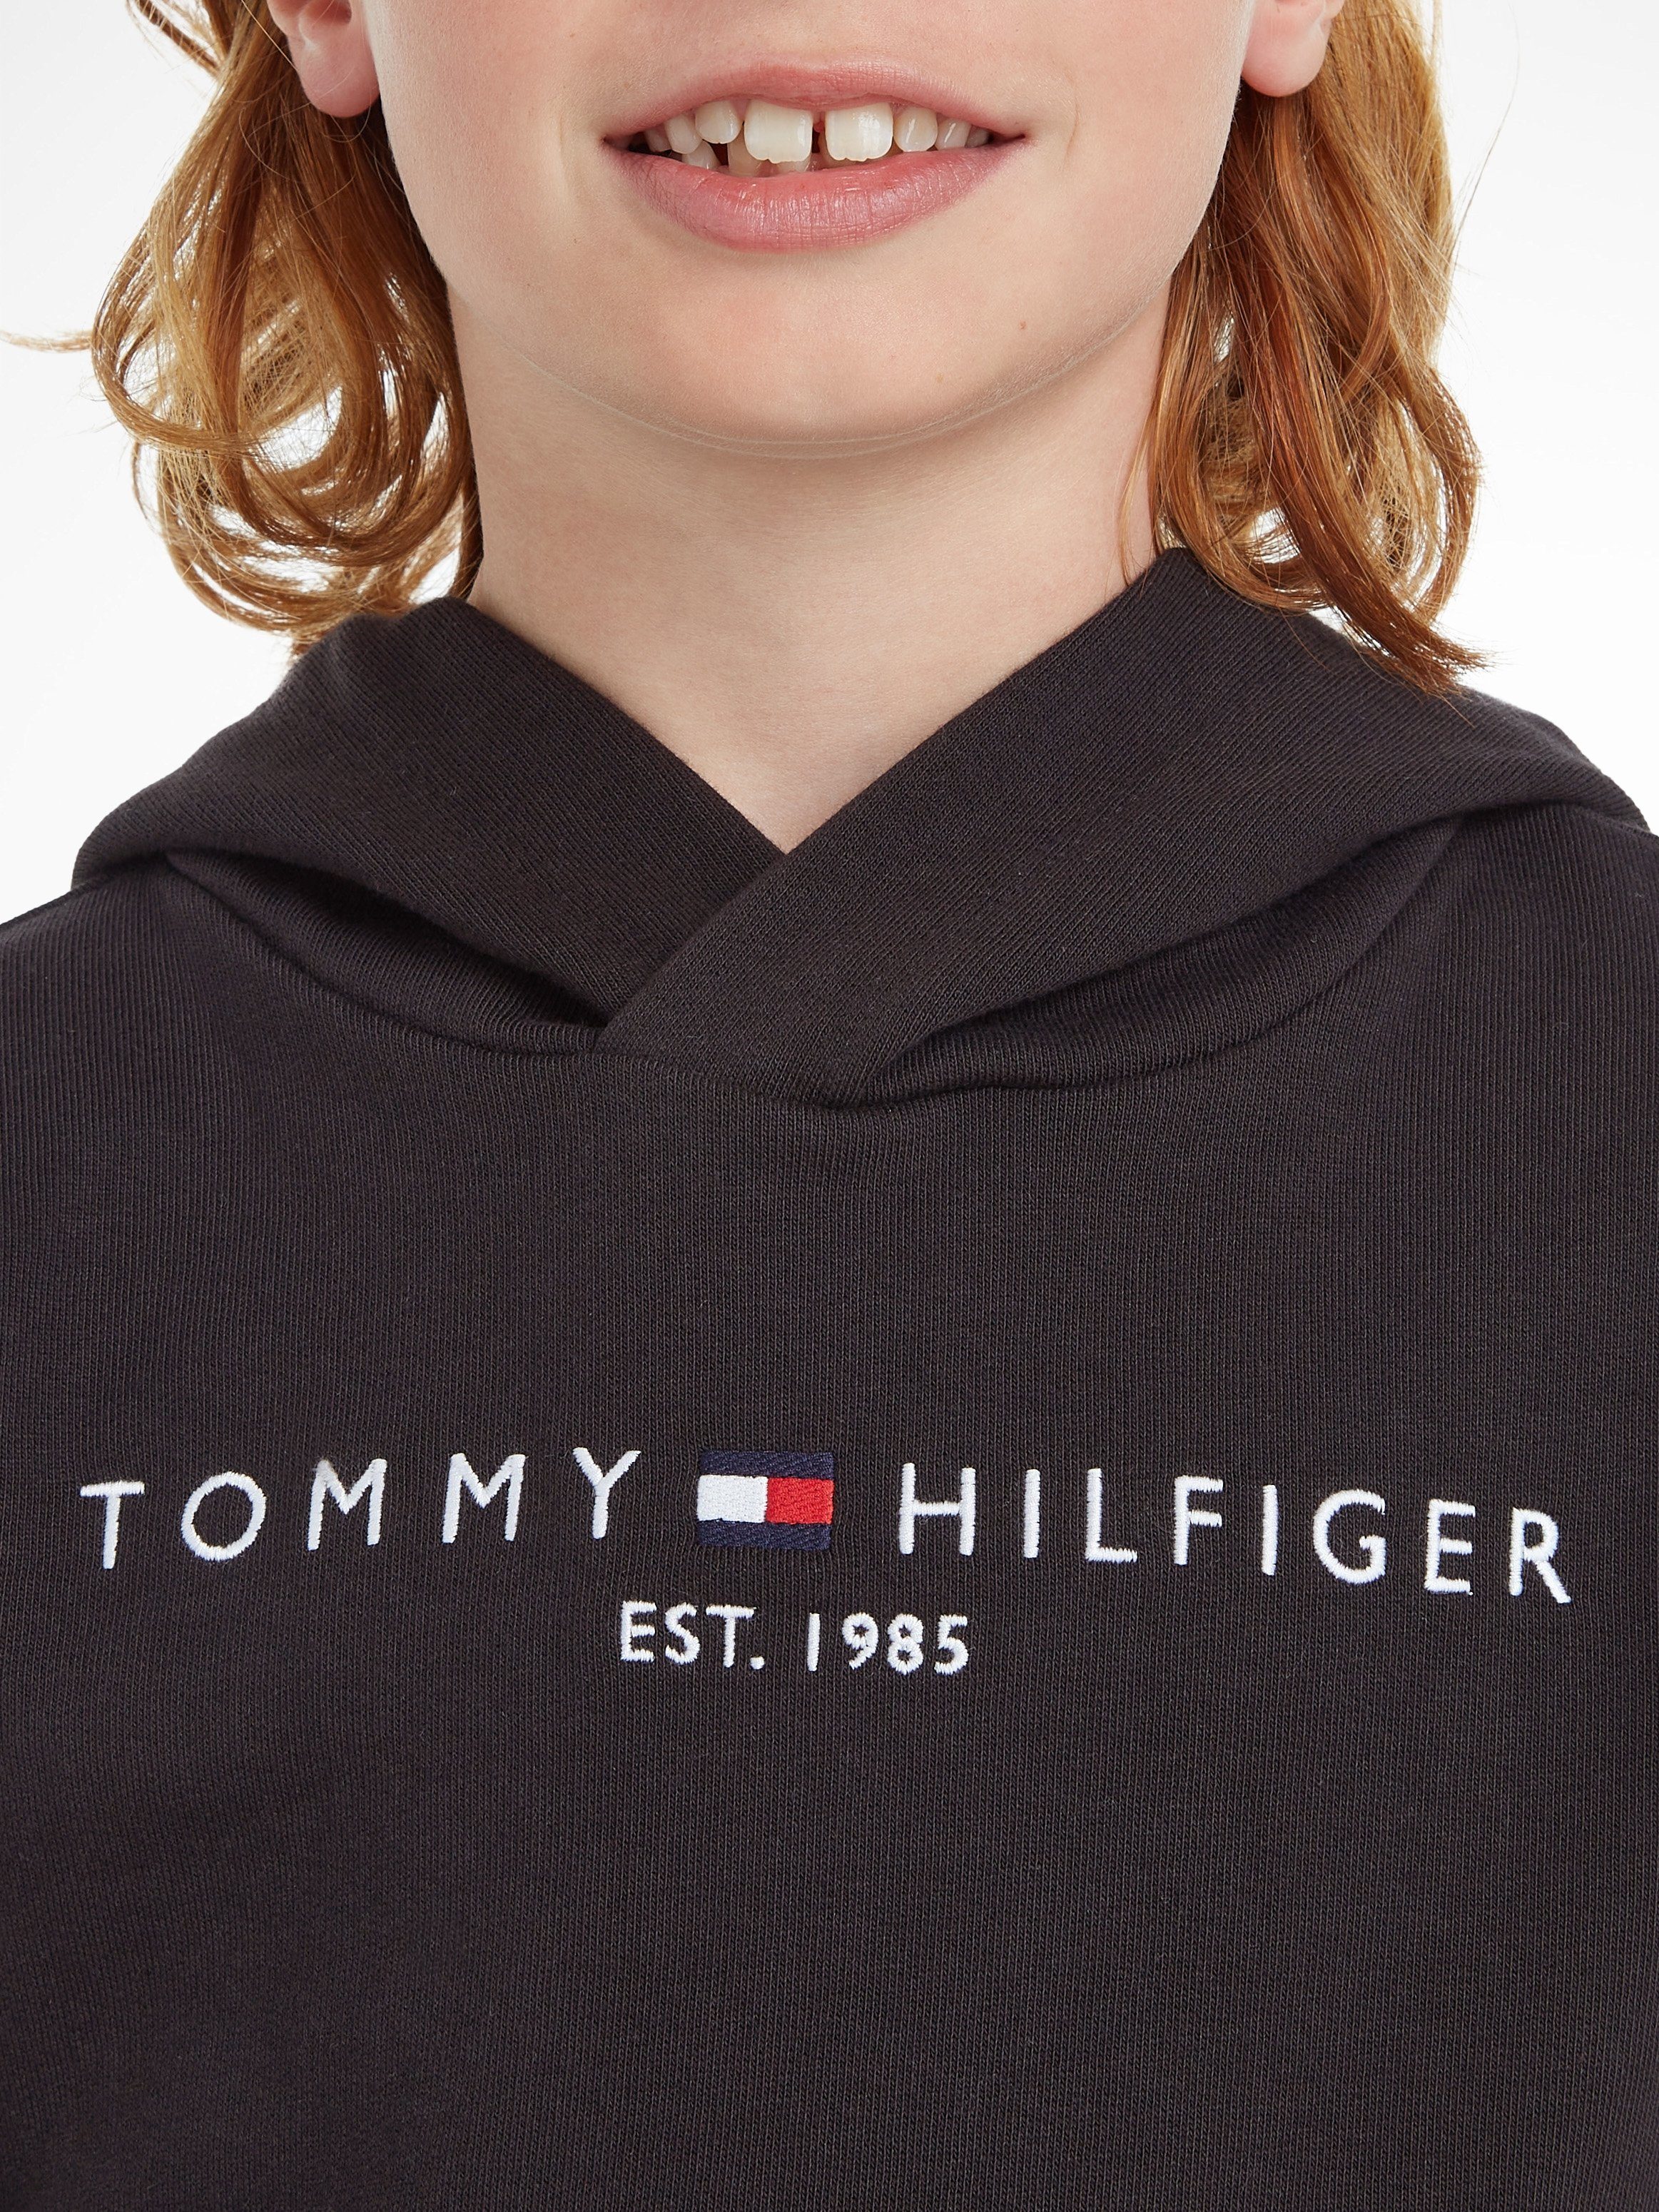 ESSENTIAL HOODIE Junior Kapuzensweatshirt Hilfiger Kinder Mädchen und Tommy Kids Jungen MiniMe,für